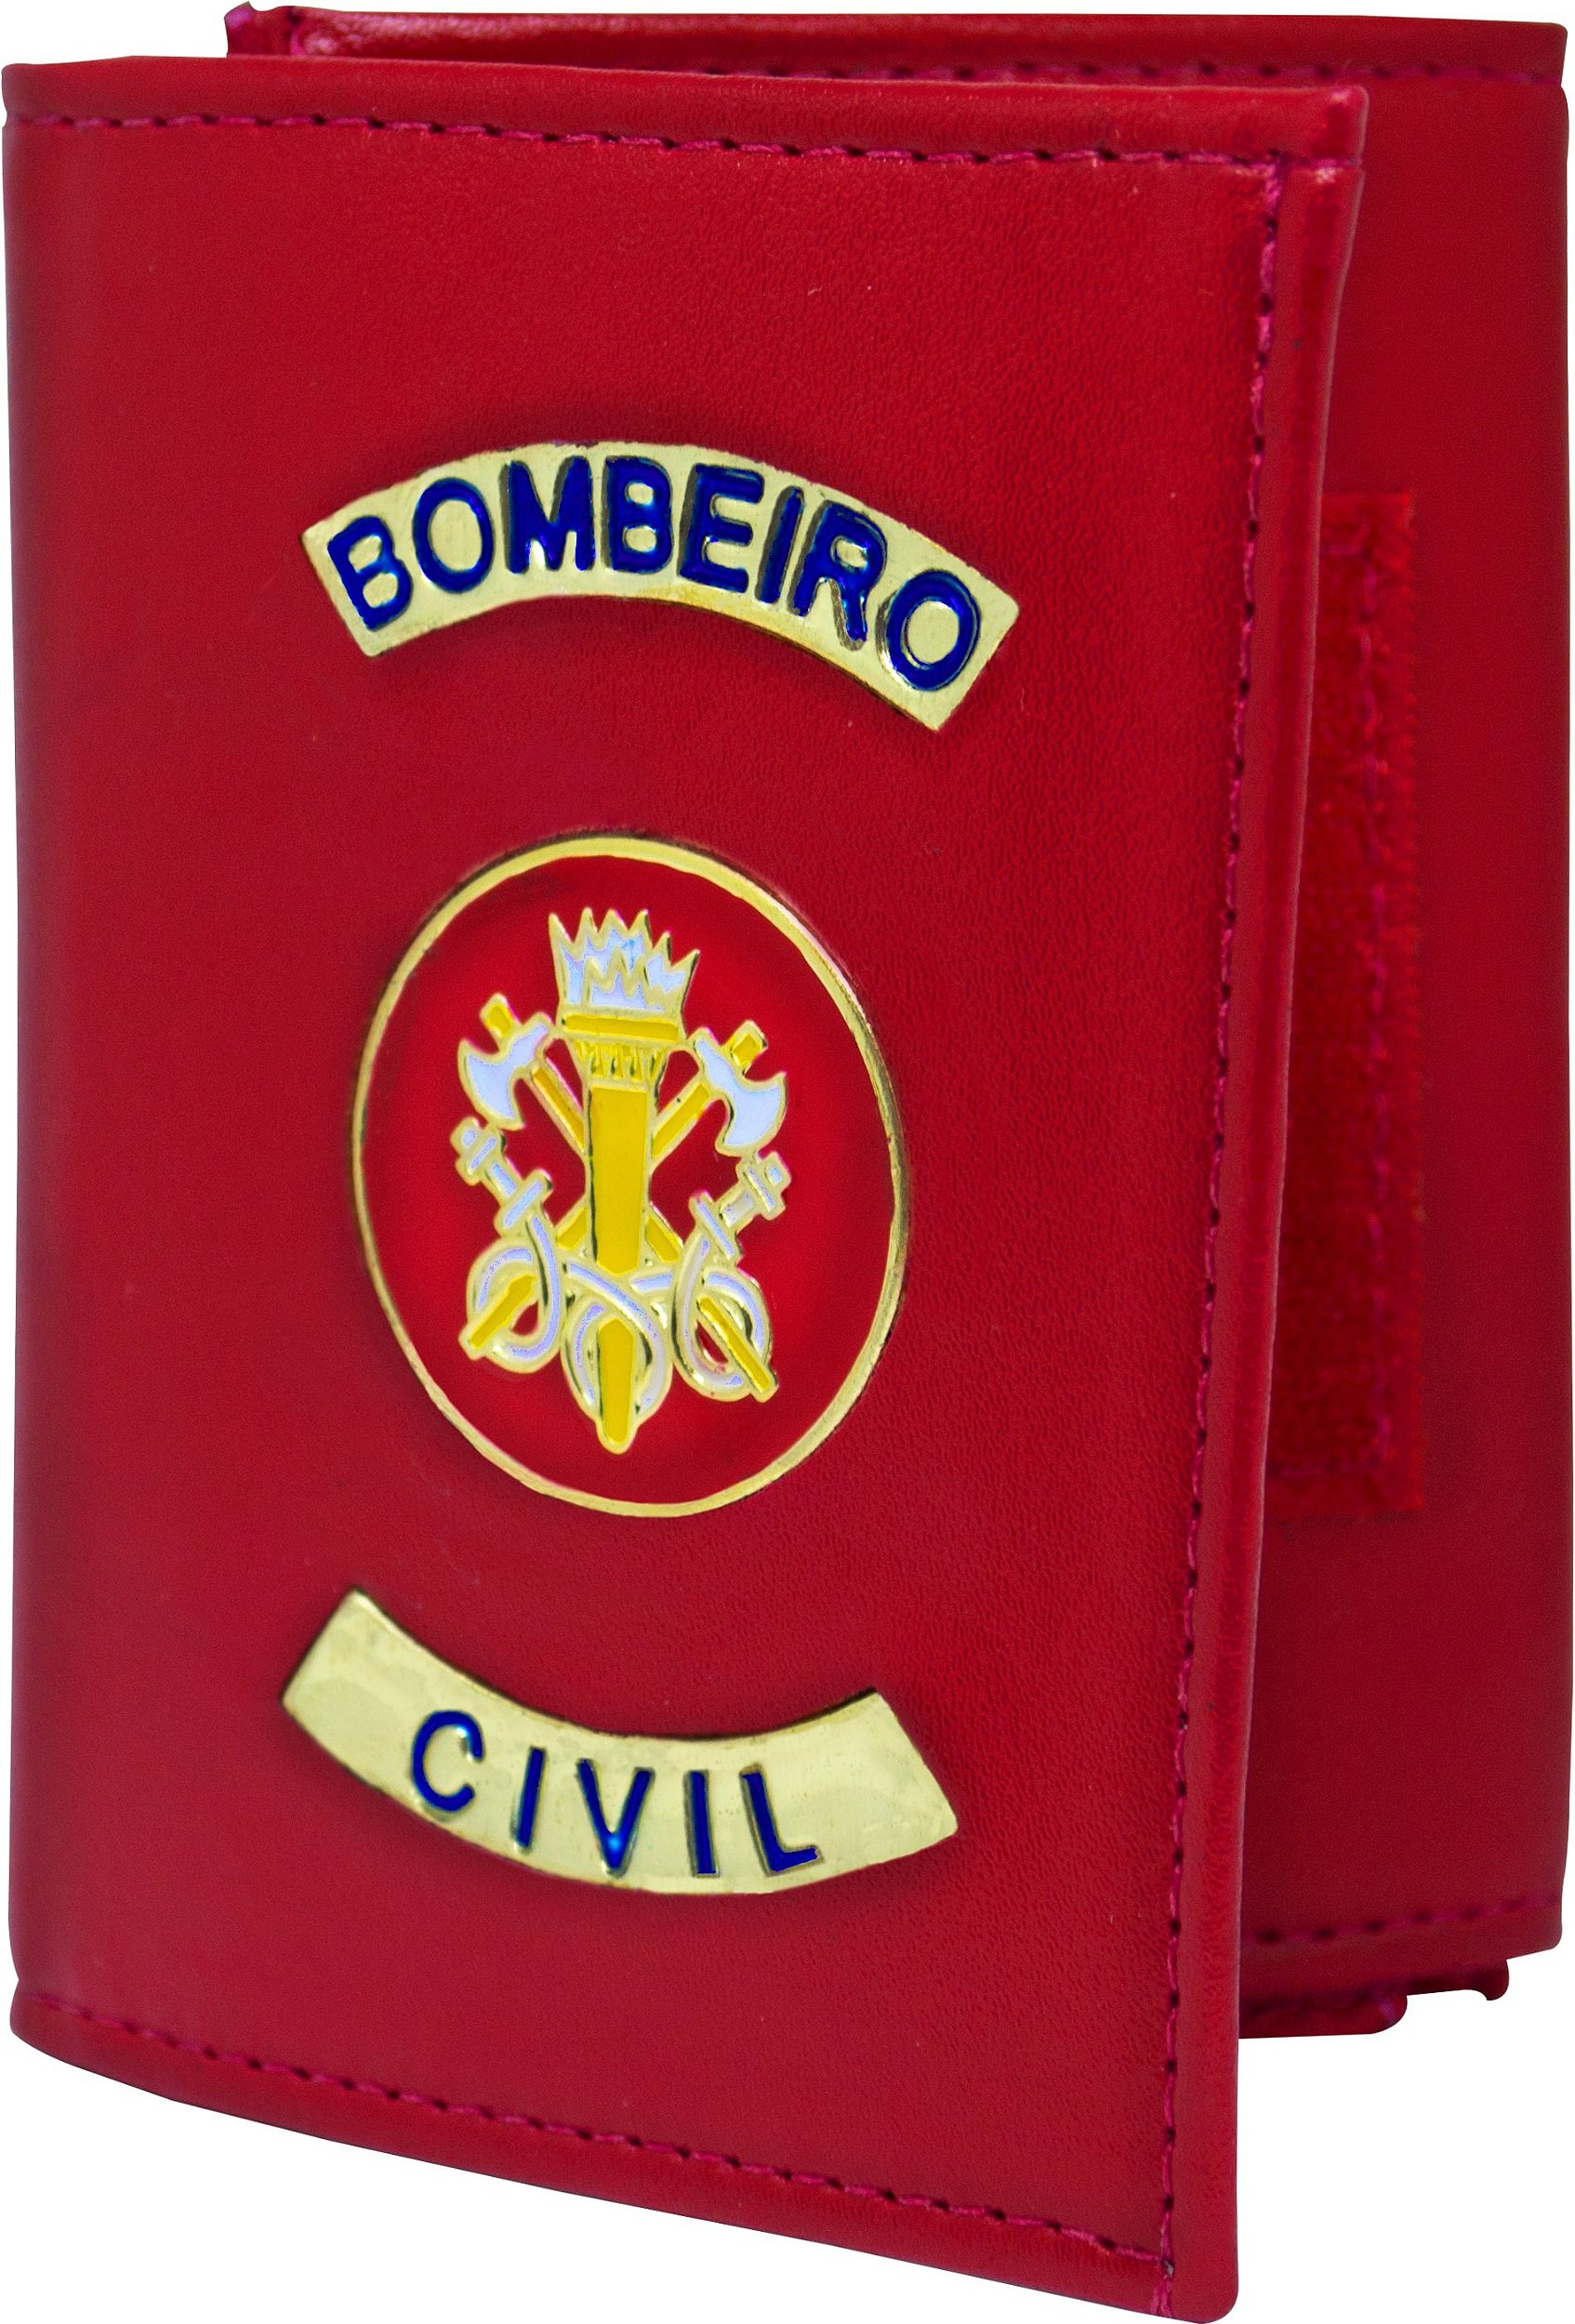 CARTEIRA COURVIN - BOMBEIRO CIVIL - Miguel Hernandez | Artigos Militares